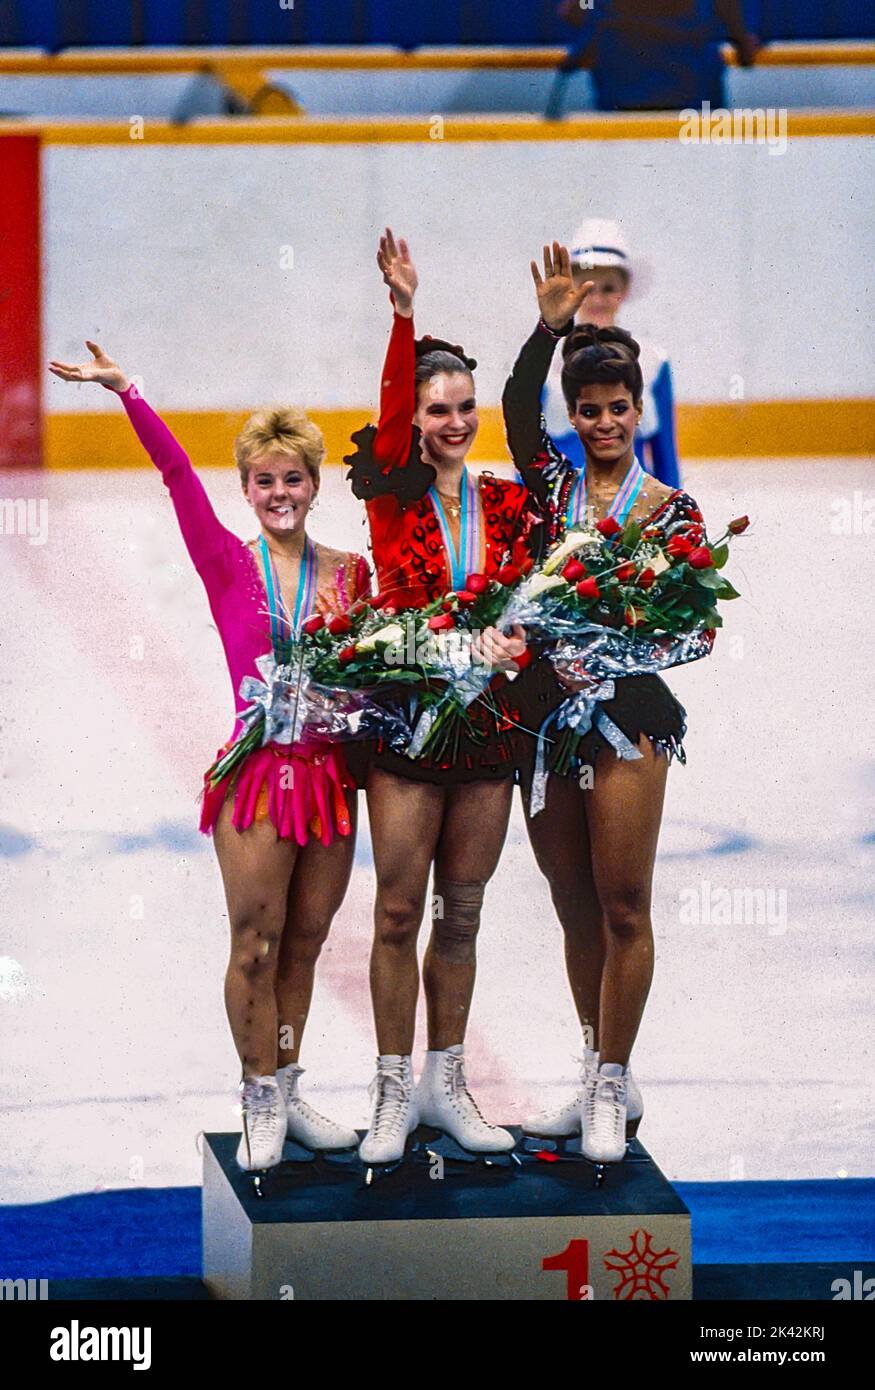 Katarina Witt (DDR) Goldmedaillengewinnerin und Olympiasiegerin mit Elizabeth Manley (CAN)-L- Silbermedaillengewinnerin und Bronzemedaillengewinnerin Debi Thomas (USA) beim Damen-Eiskunstlauf bei den Olympischen Winterspielen 1988. Stockfoto